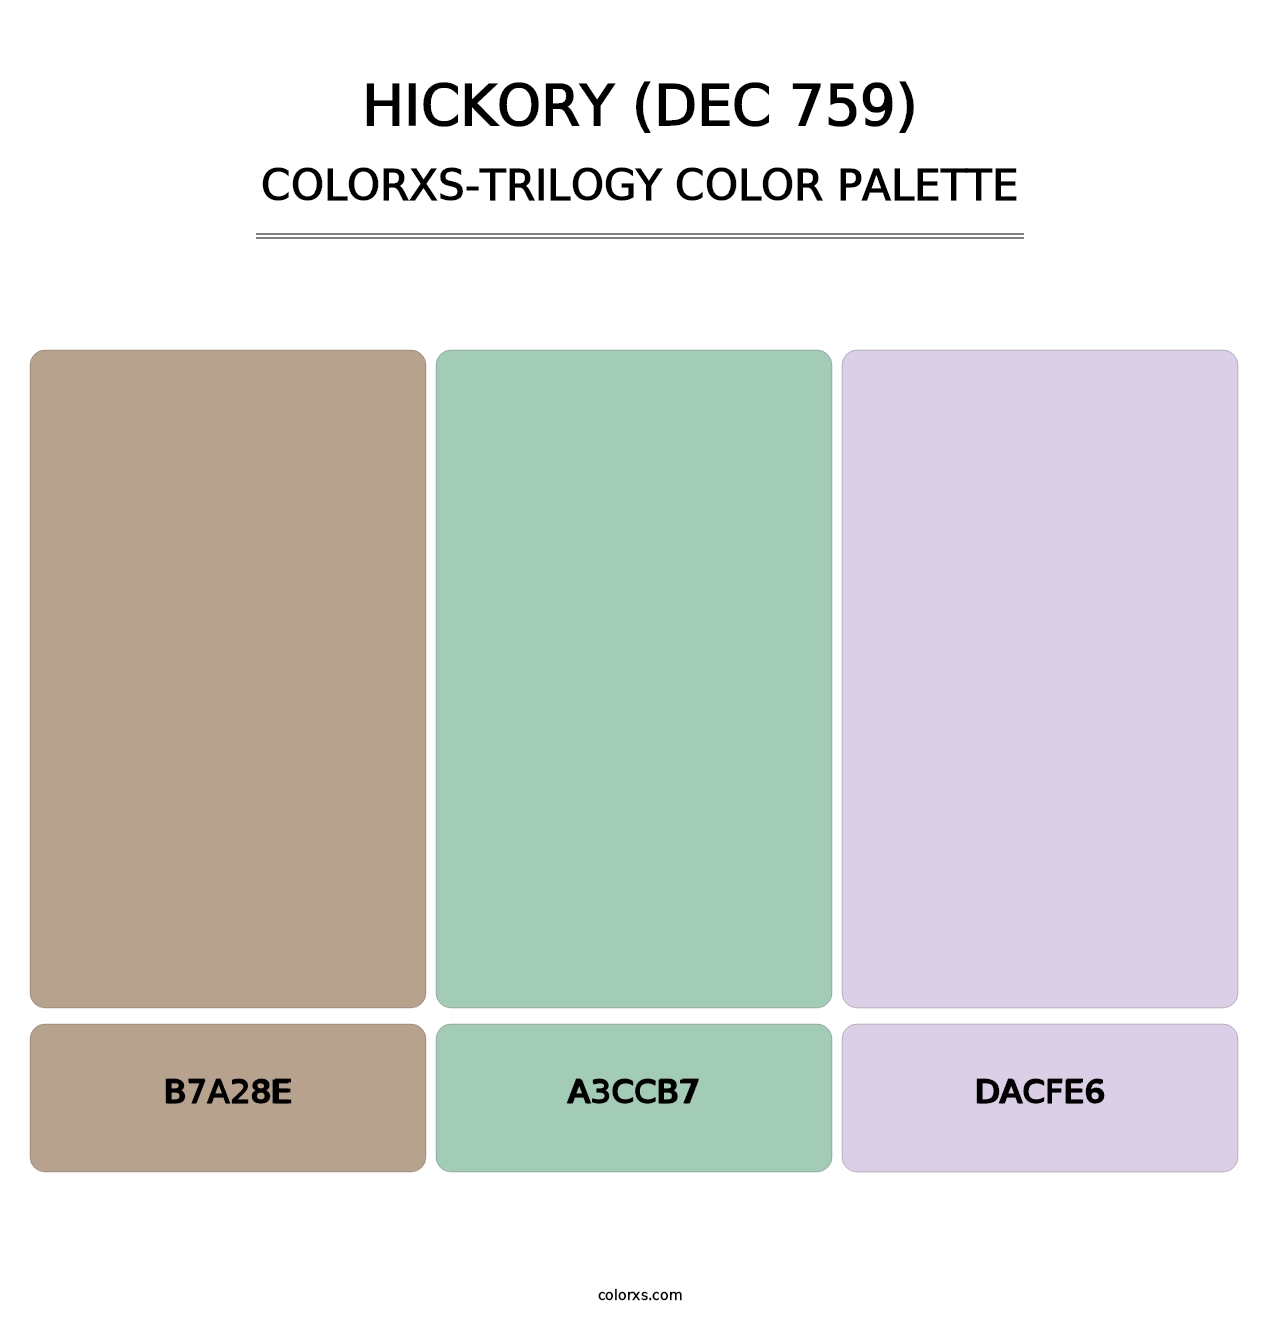 Hickory (DEC 759) - Colorxs Trilogy Palette